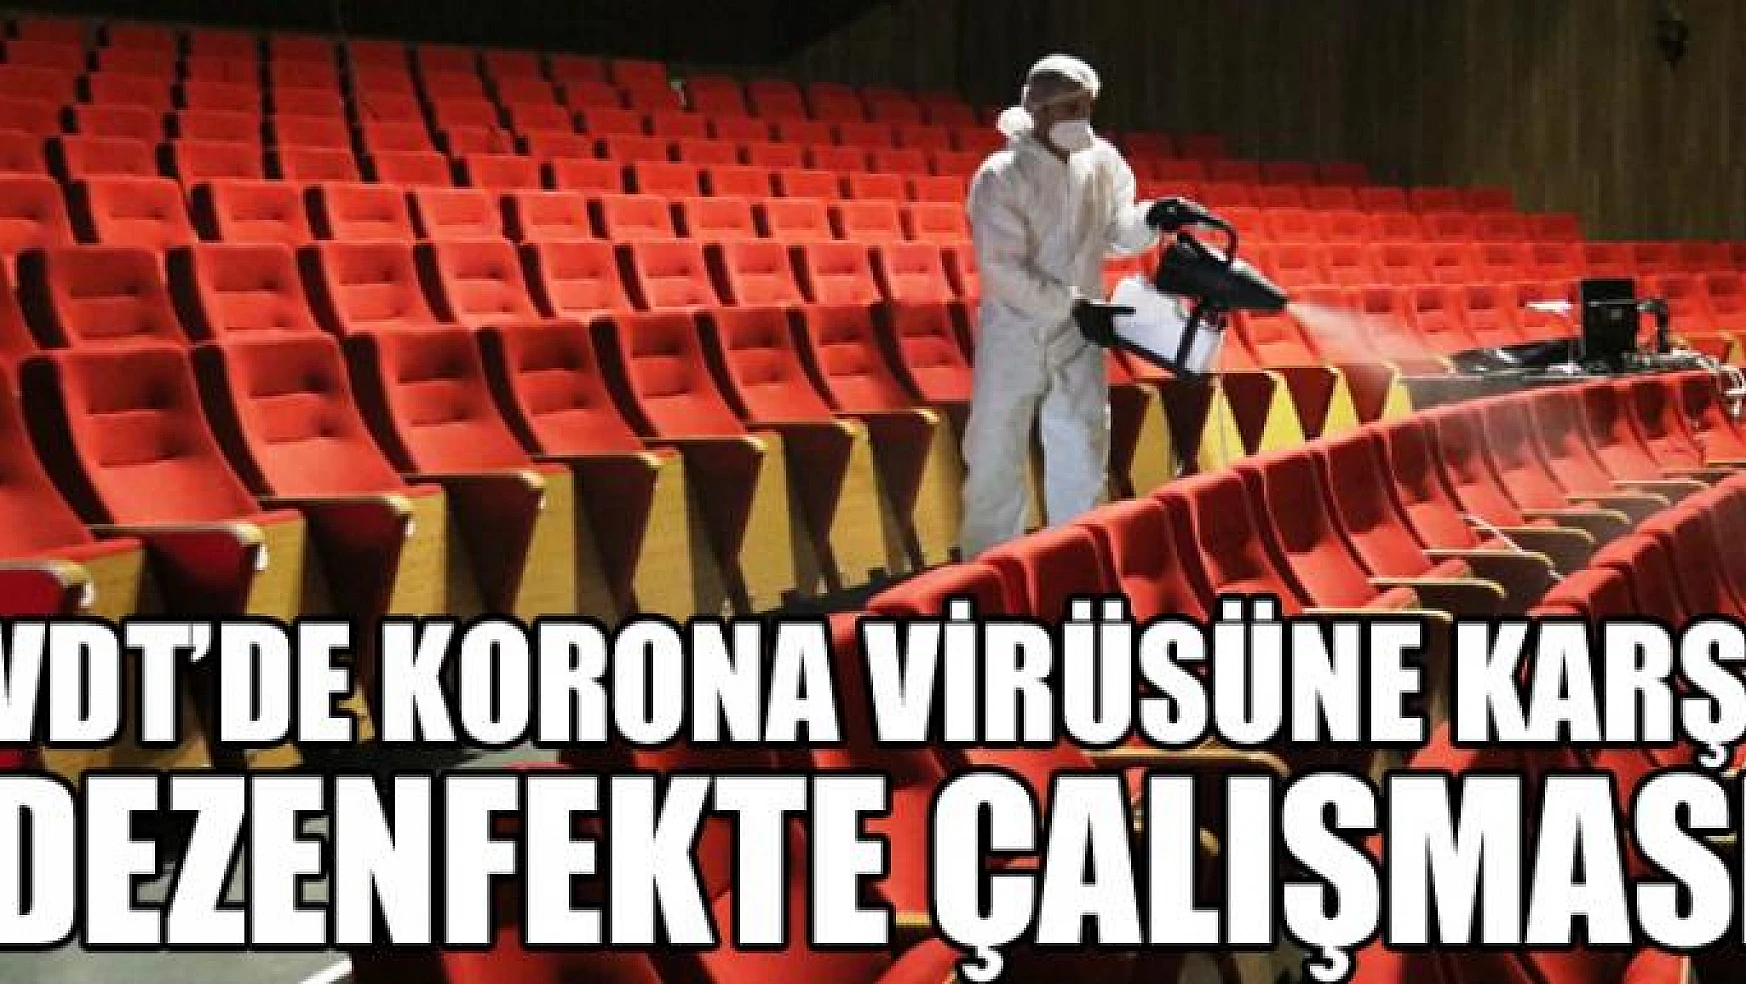 Van Devlet Tiyatrosunda korona virüsüne karşı dezenfekte çalışması